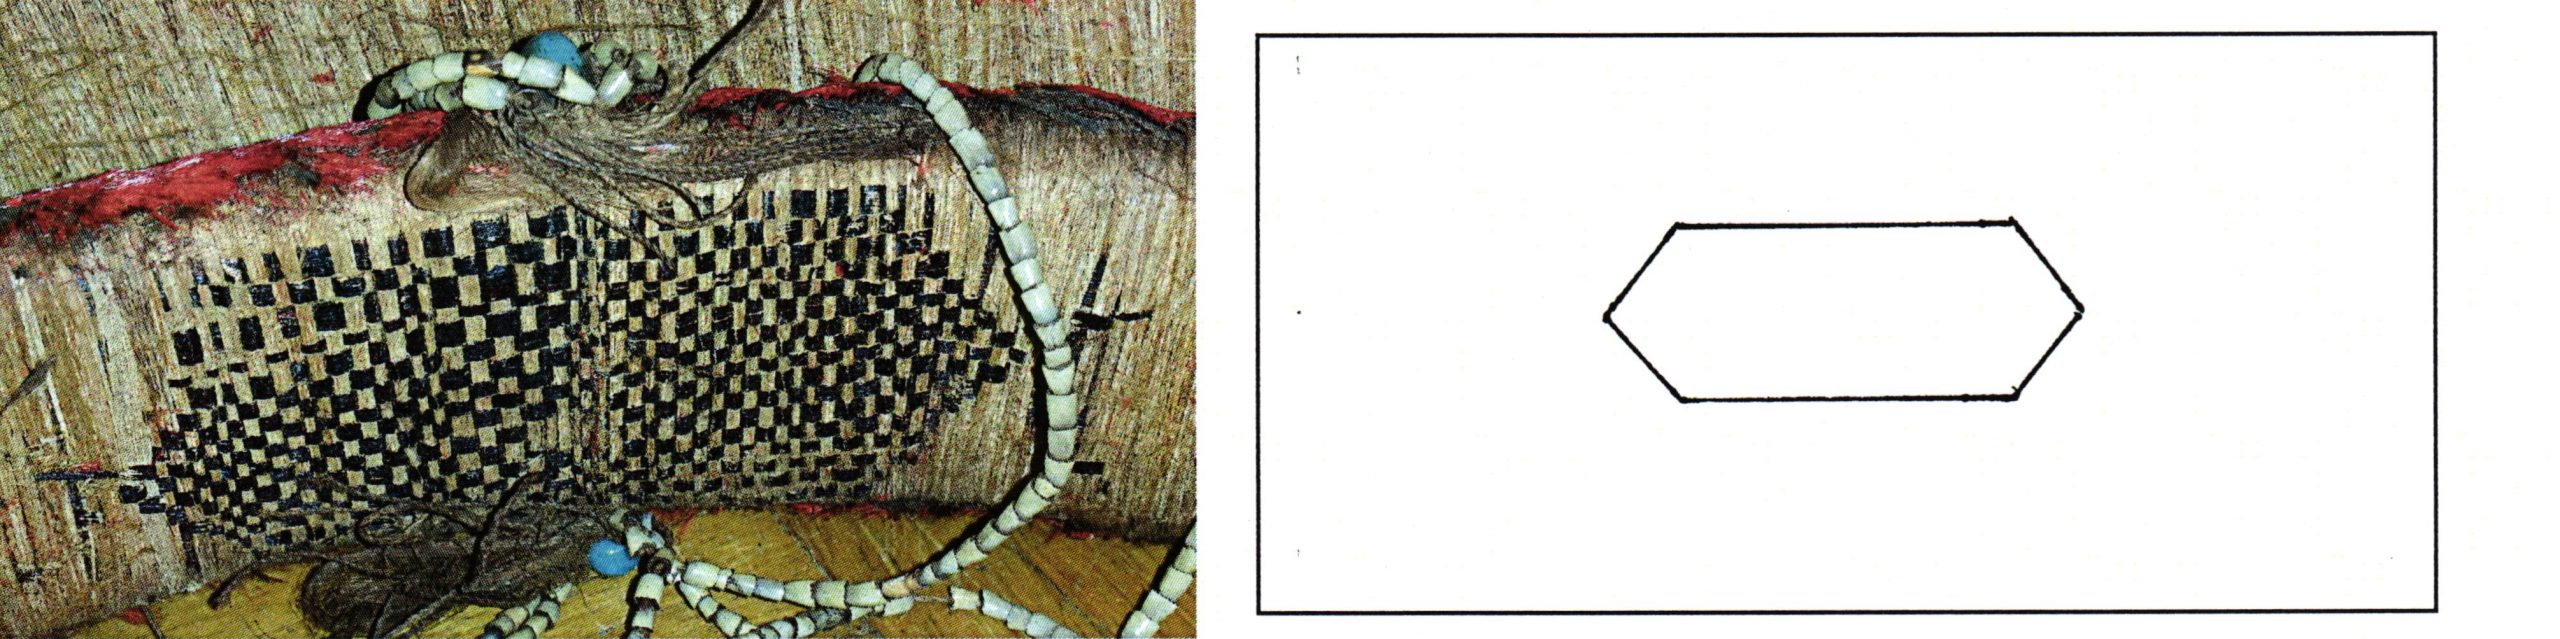 PGS 36,2 (2015) Tafel 39 Abb. 11: Federgeldrolle [EUMO]. Handwerkermarke lang gestrecktes Sechseck